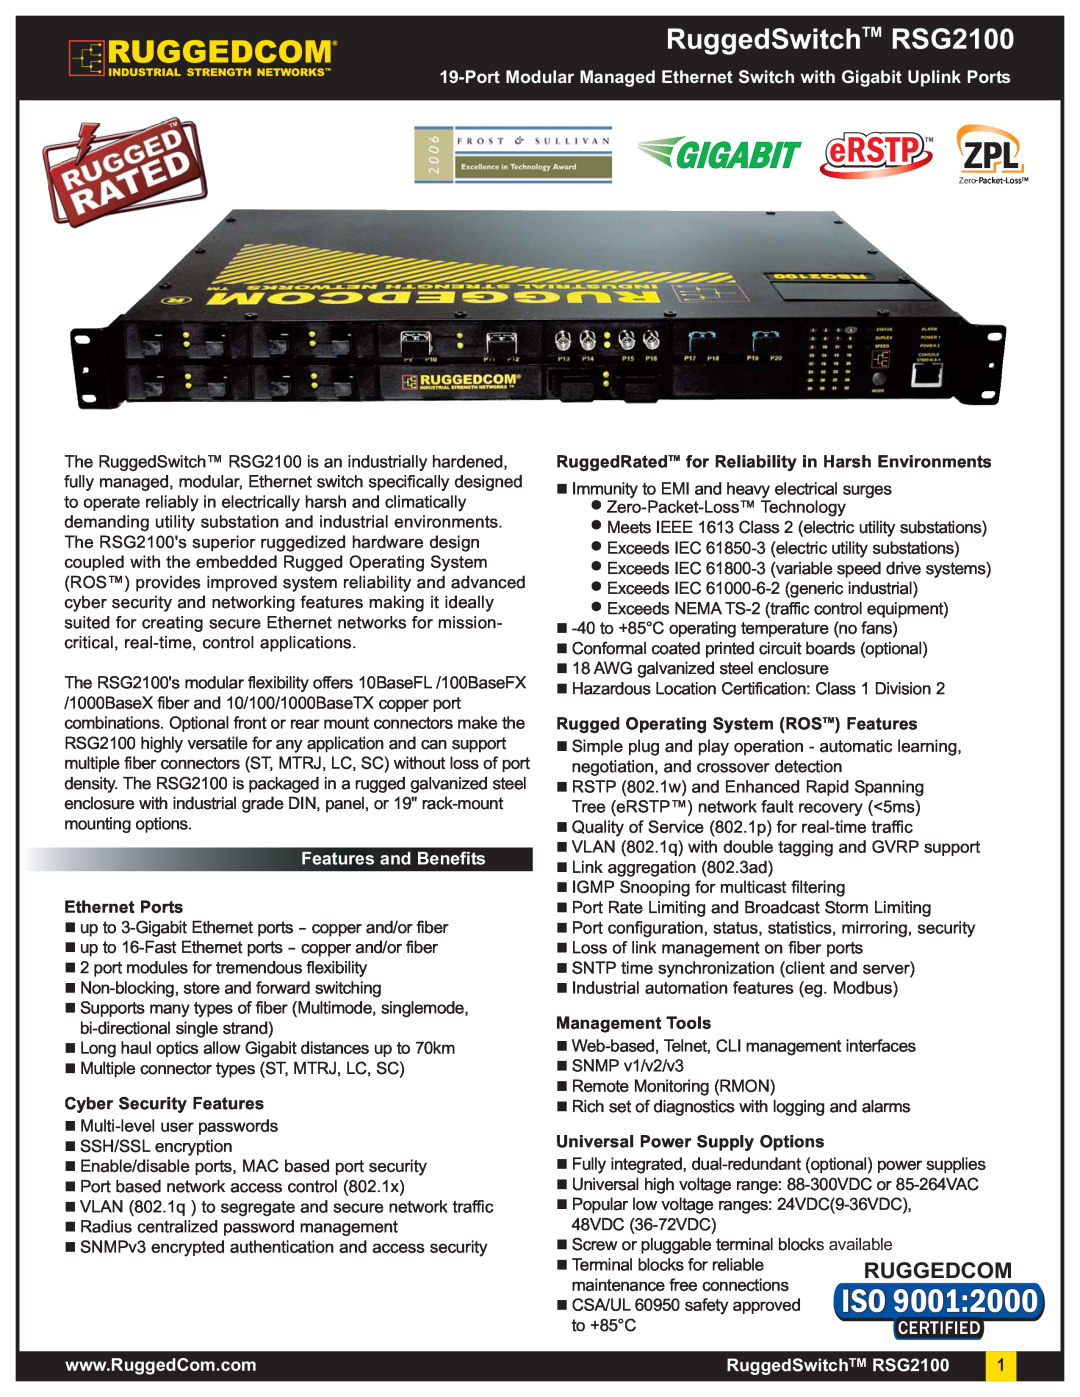 RuggedCom manual RuggedSwitchTM RSG2100, Port Modular Managed Ethernet Switch with Gigabit Uplink Ports, eRSTP TM 